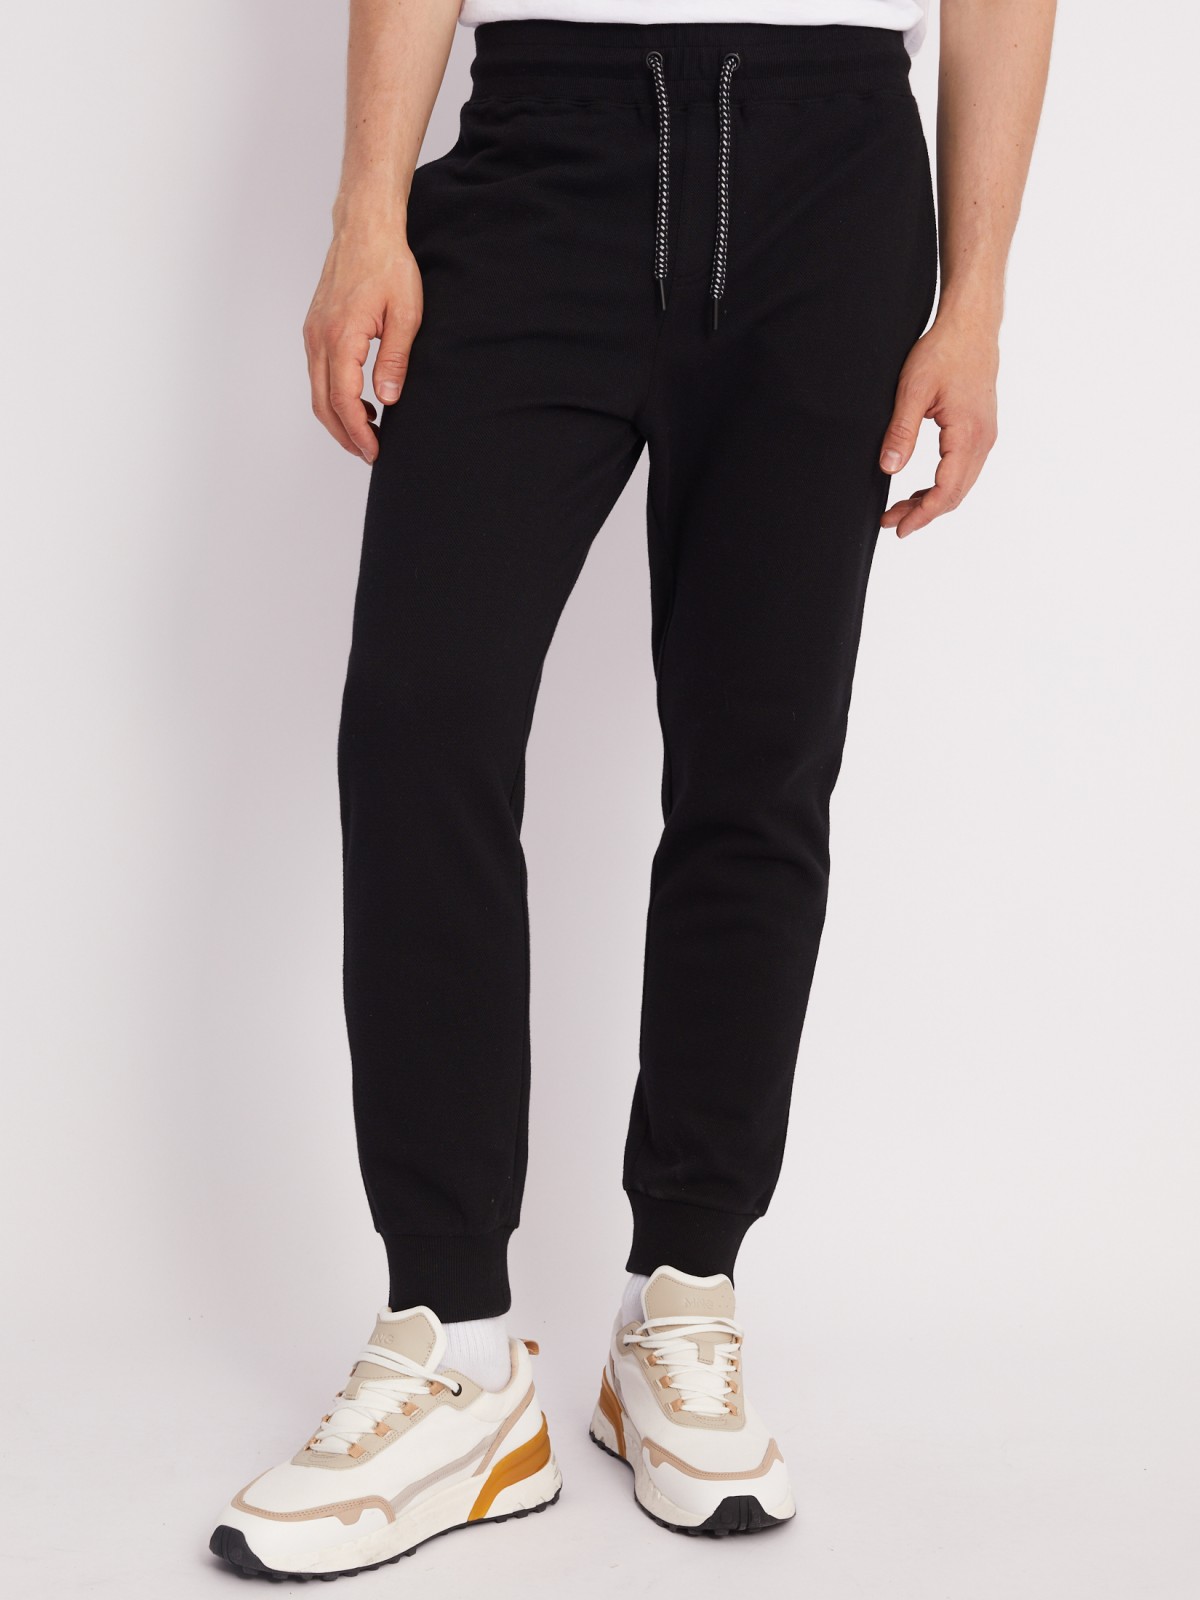 Трикотажные брюки-джоггеры в спортивном стиле zolla 21331762F012, цвет черный, размер M - фото 2